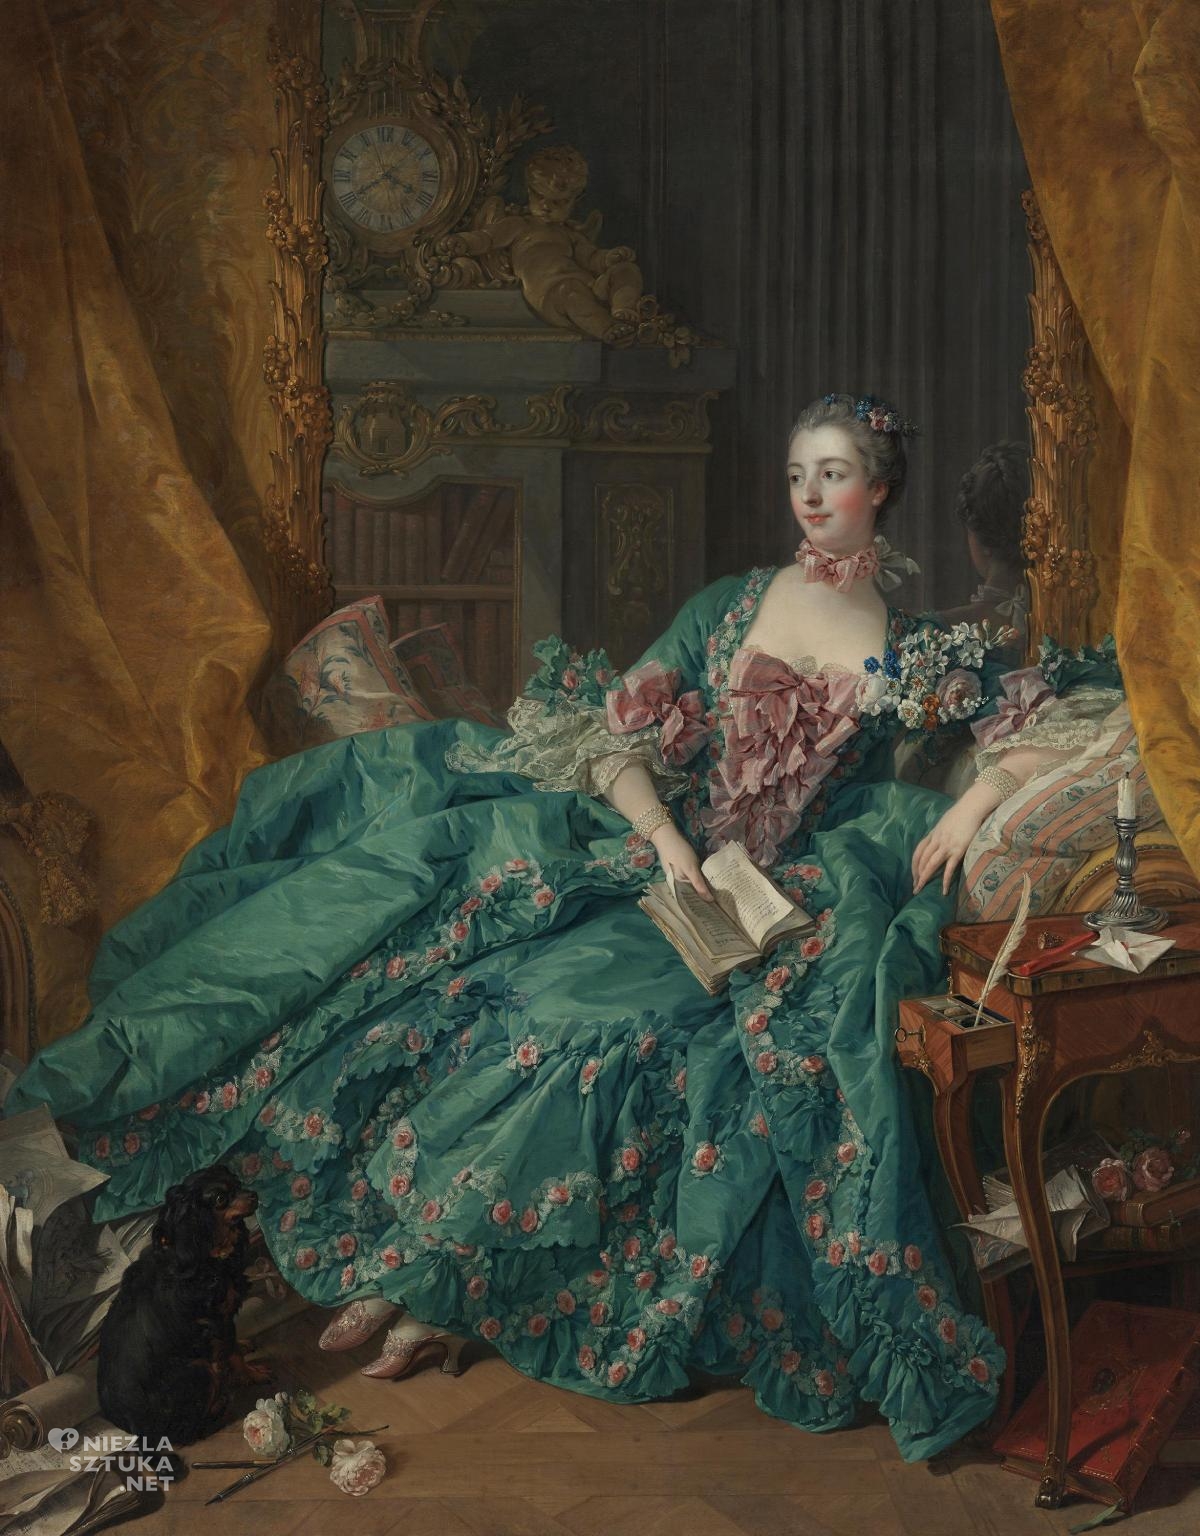 François Boucher, Portret Madame de Pompadour, sztuka francuska, kobiety w sztuce, leżąca, czytająca kobieta, arystokracja, niezła sztuka